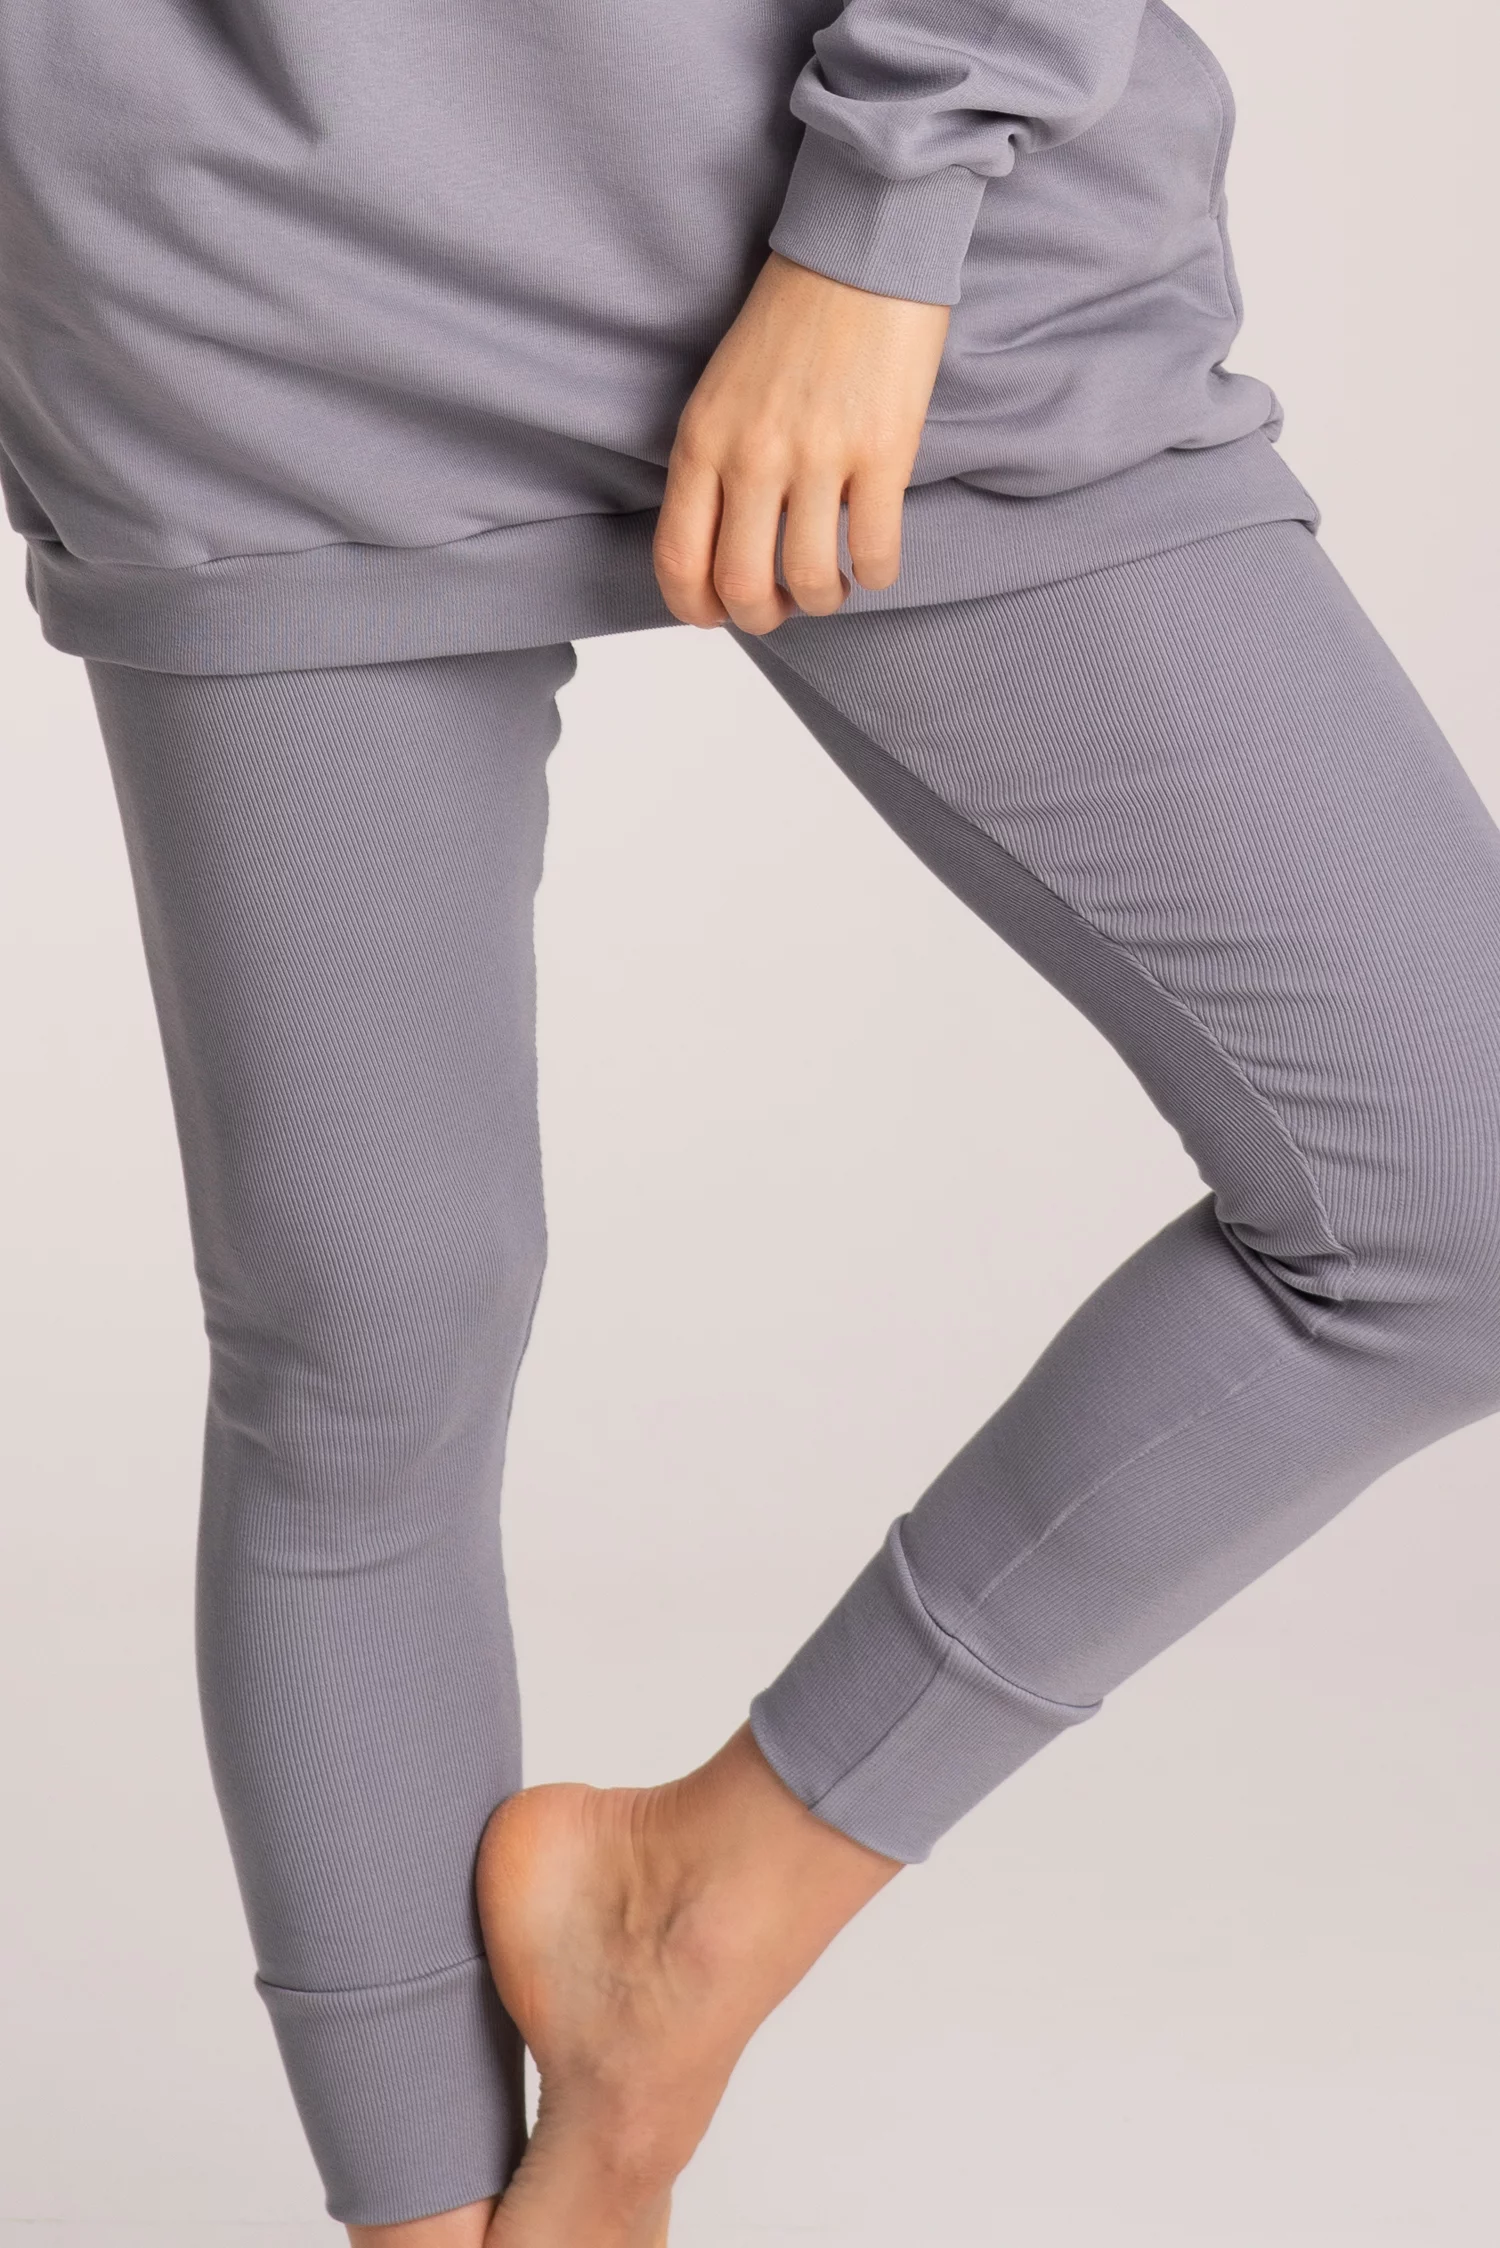 Prążkowane legginsy damskie z wysokim stanem, elastyczny materiał.